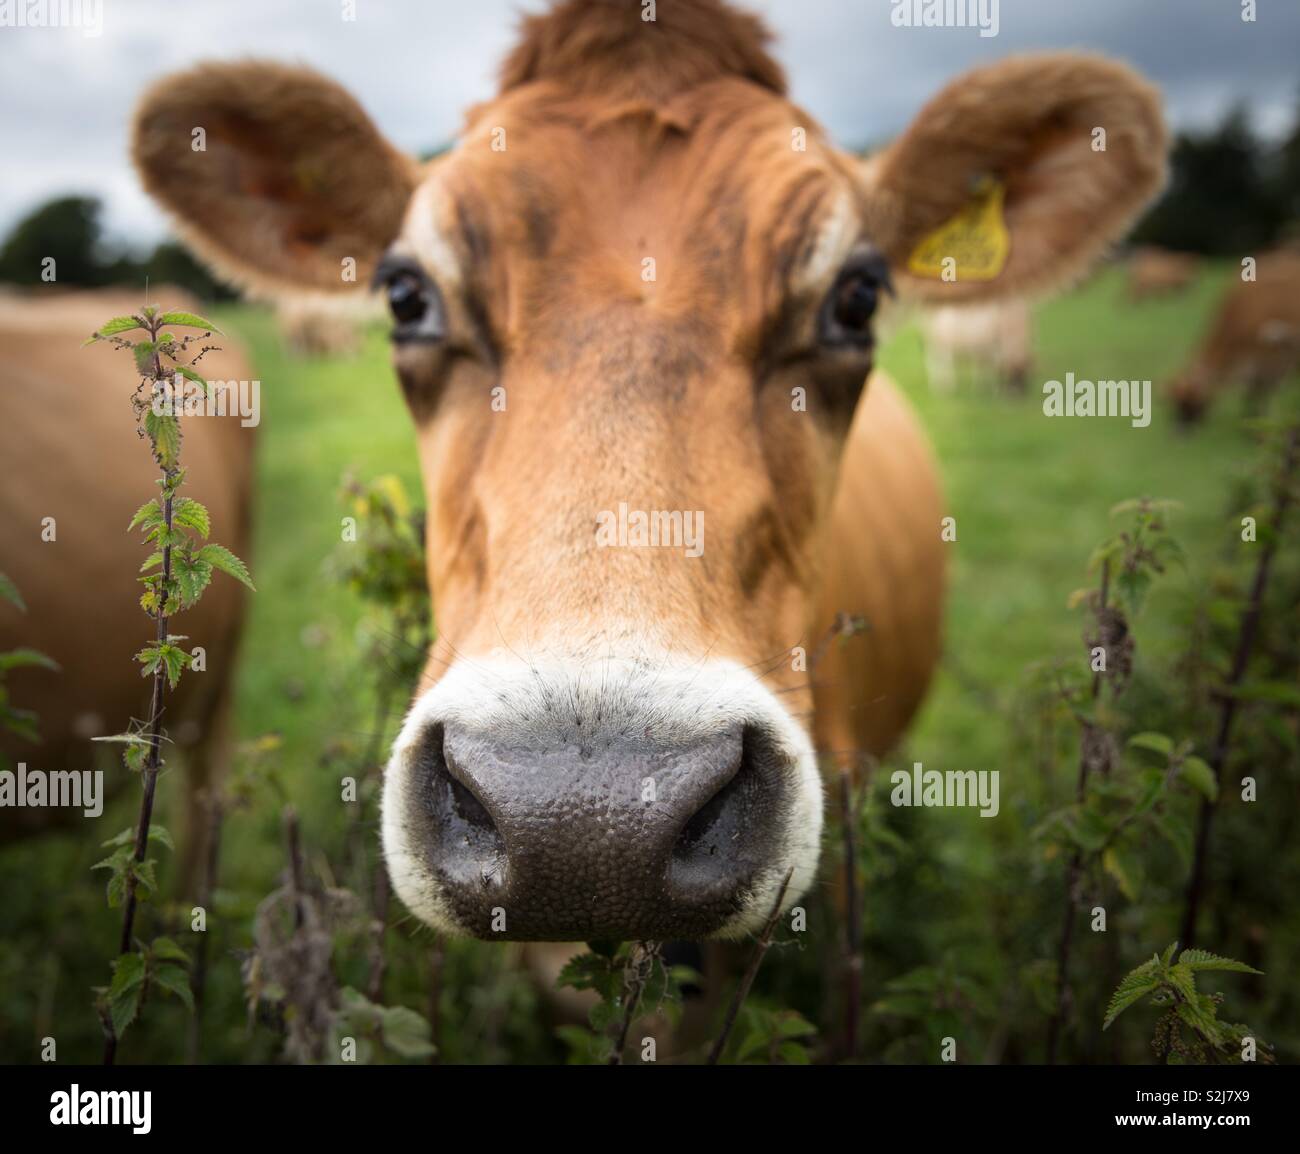 Eine Nahaufnahme Portrait der Kopf eines braunen Milchkühe mit seiner großen Nase, Ohren und Augen direkt in die Kamera schaut Stockfoto